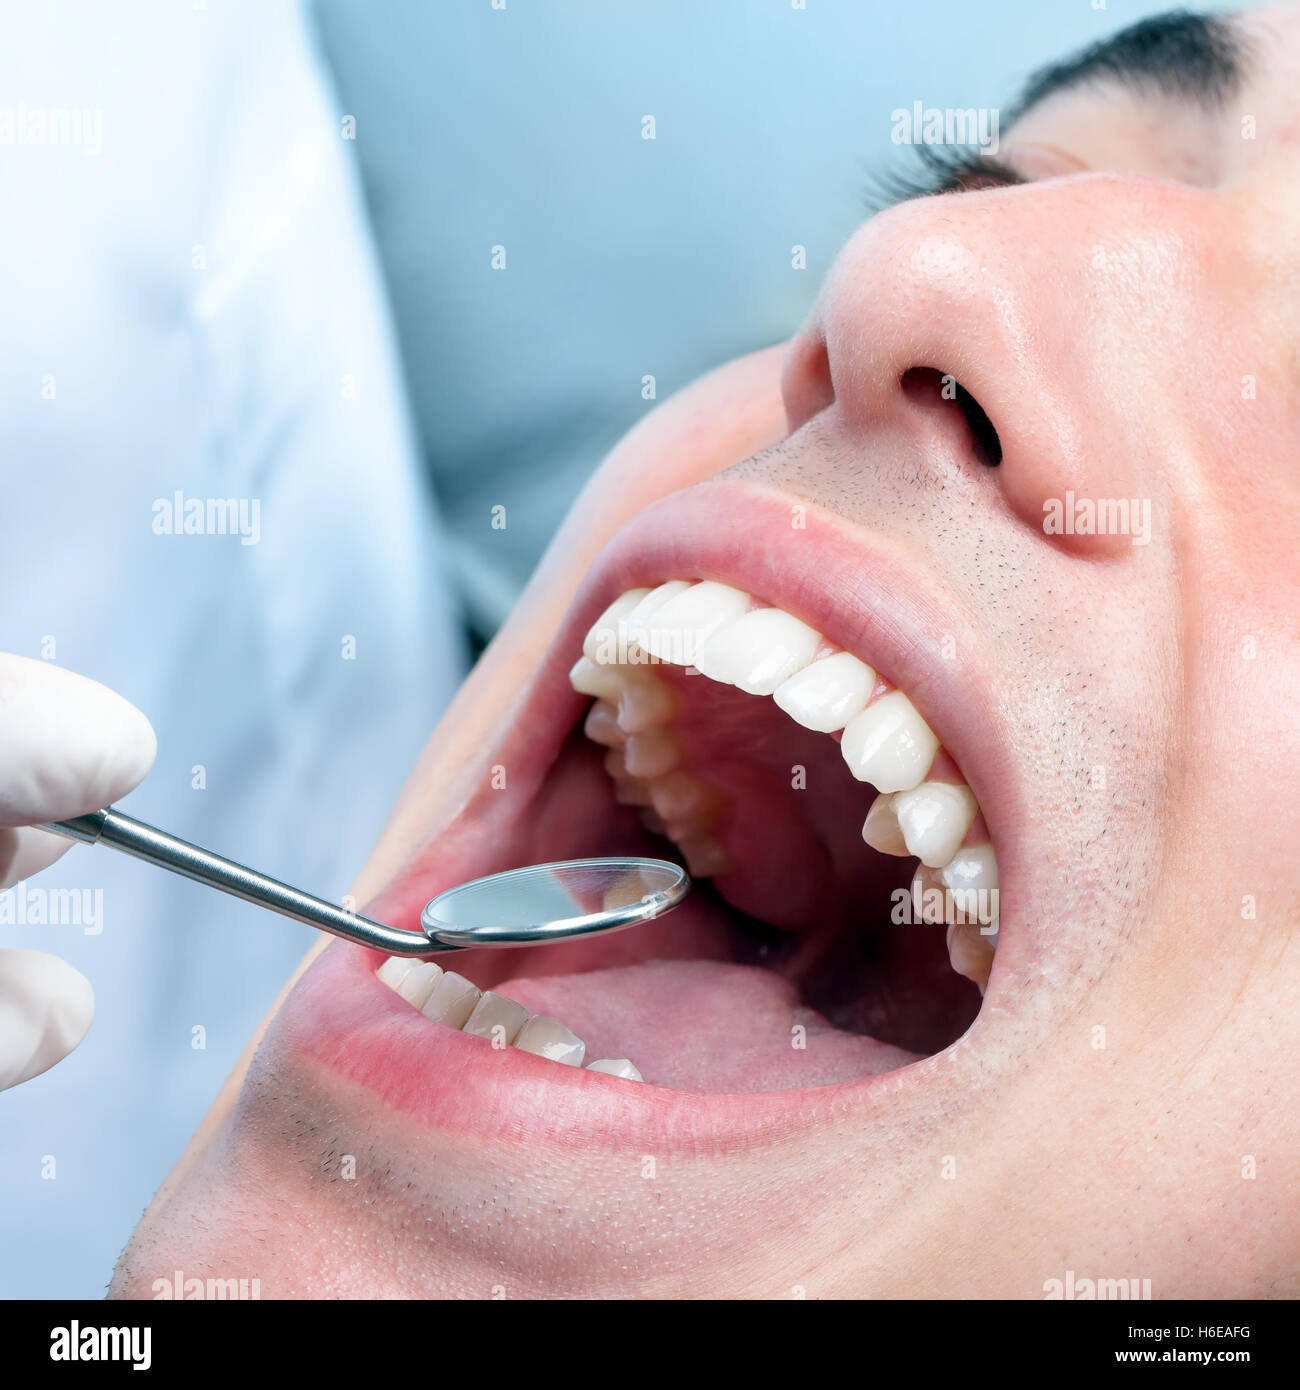 Makro Nahaufnahme von junger Mann mit offenem Mund zeigt gesunde weiße Zähne. Zahnarzt Hand Überprüfung Zähne mit Mundspiegel. Stockfoto